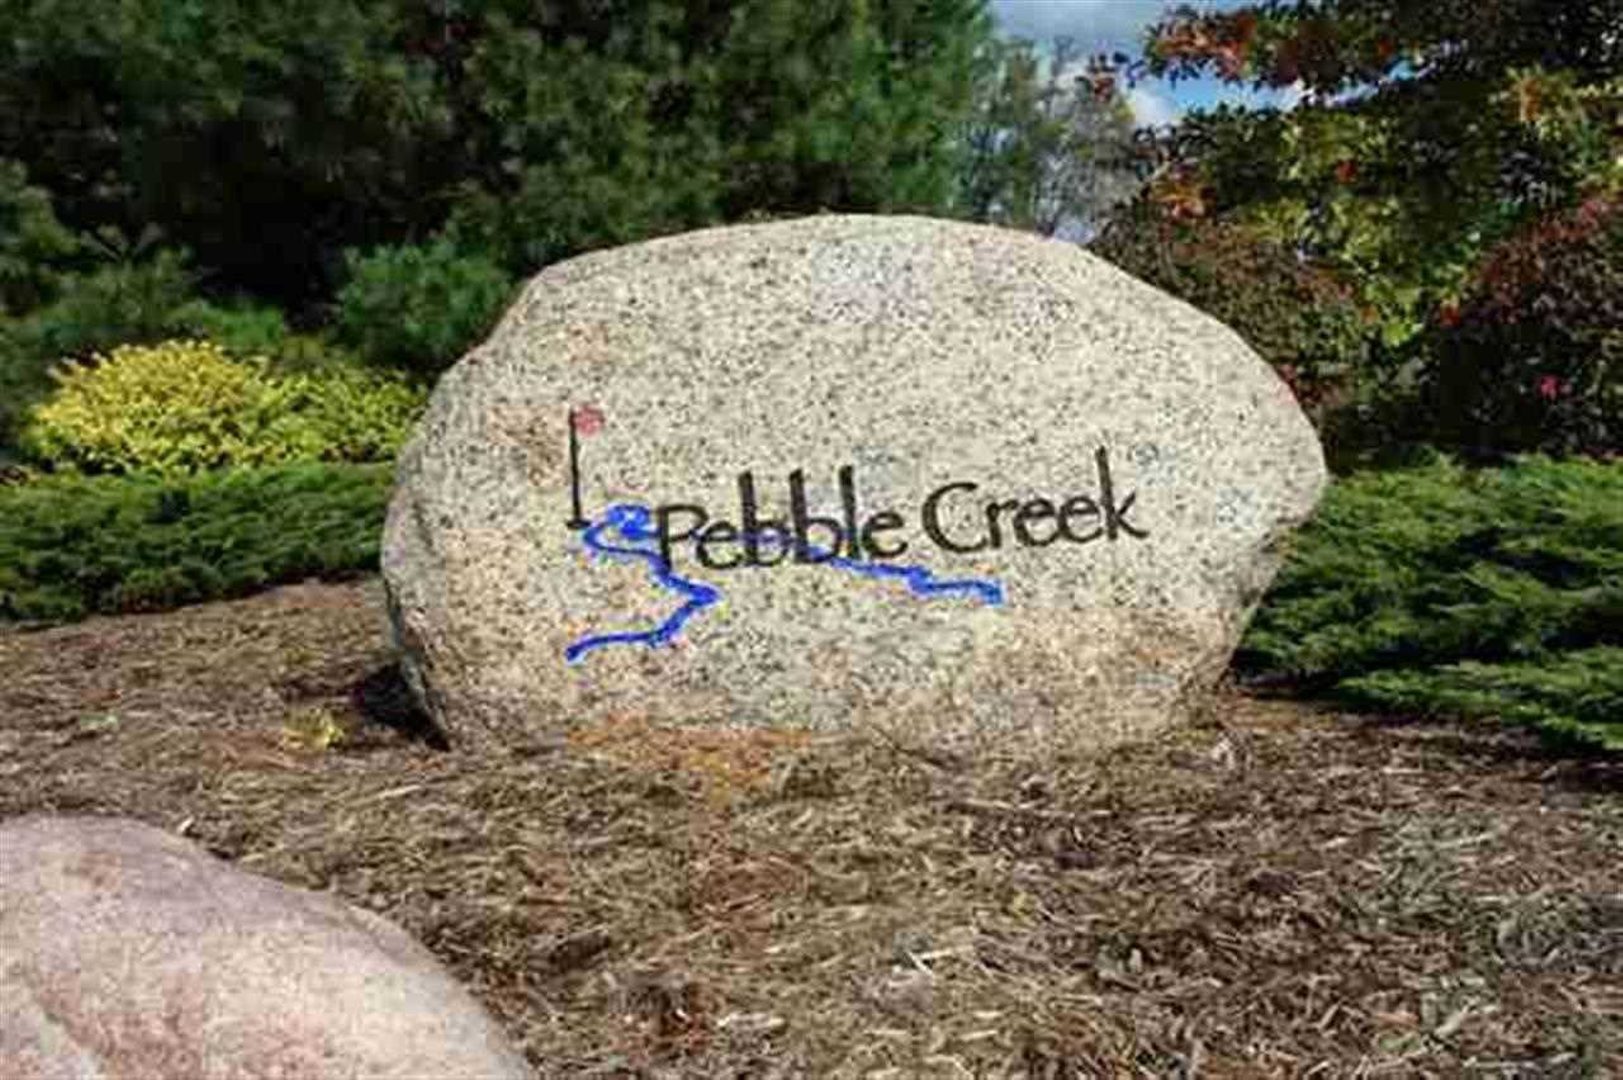 Pebble Creek South